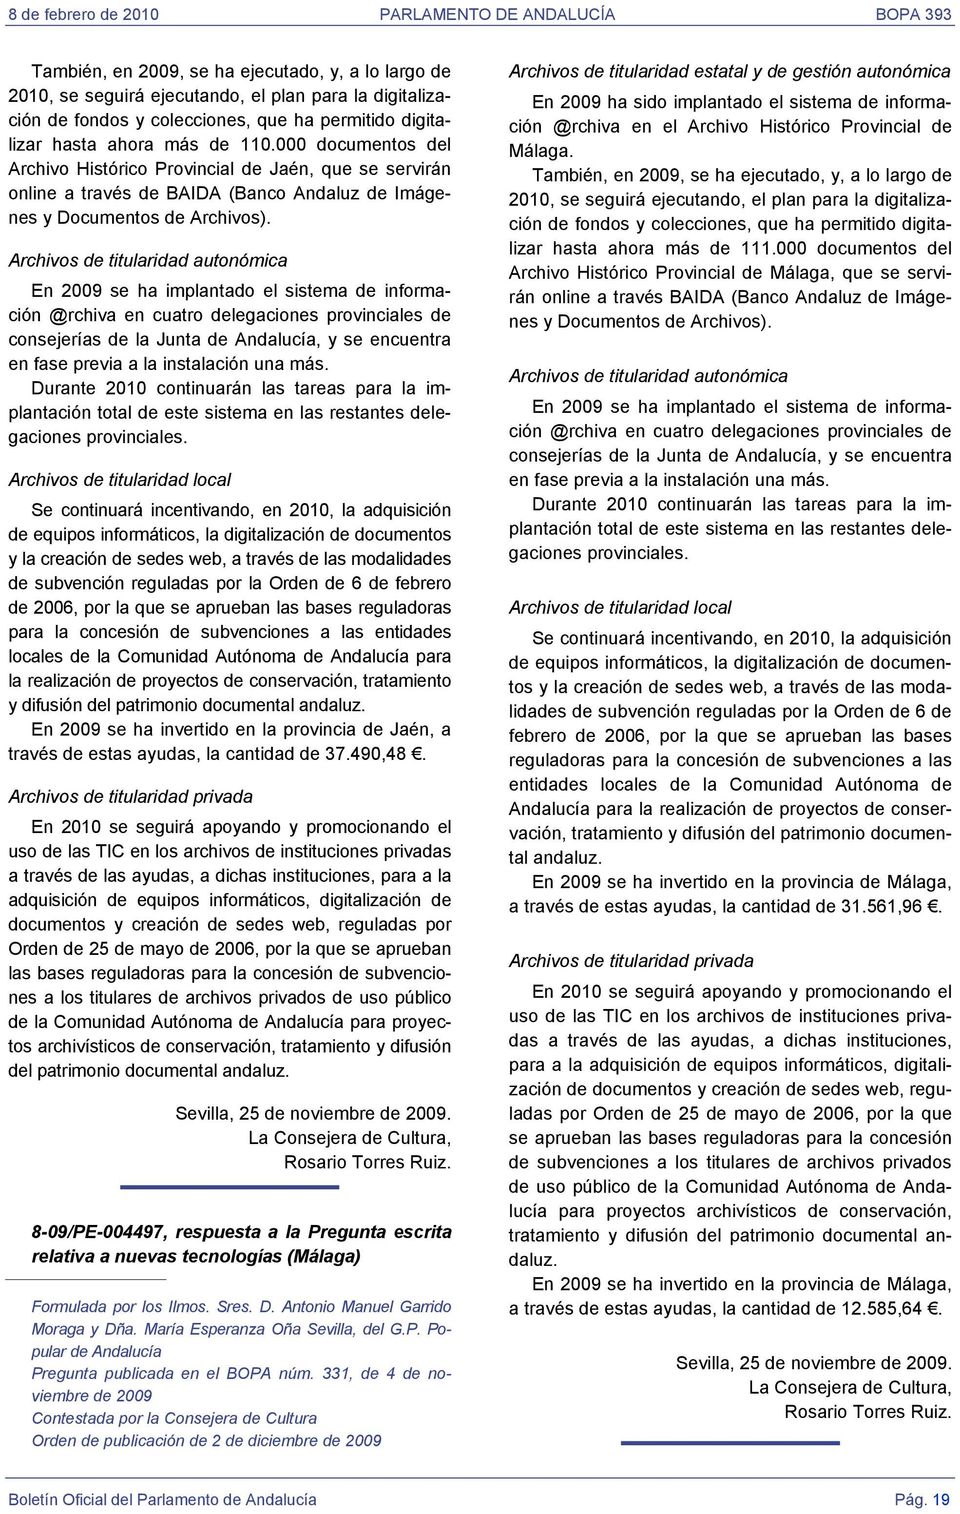 Archivos de titularidad autonómica En 2009 se ha implantado el sistema de información @rchiva en cuatro delegaciones provinciales de consejerías de la Junta de Andalucía, y se encuentra en fase